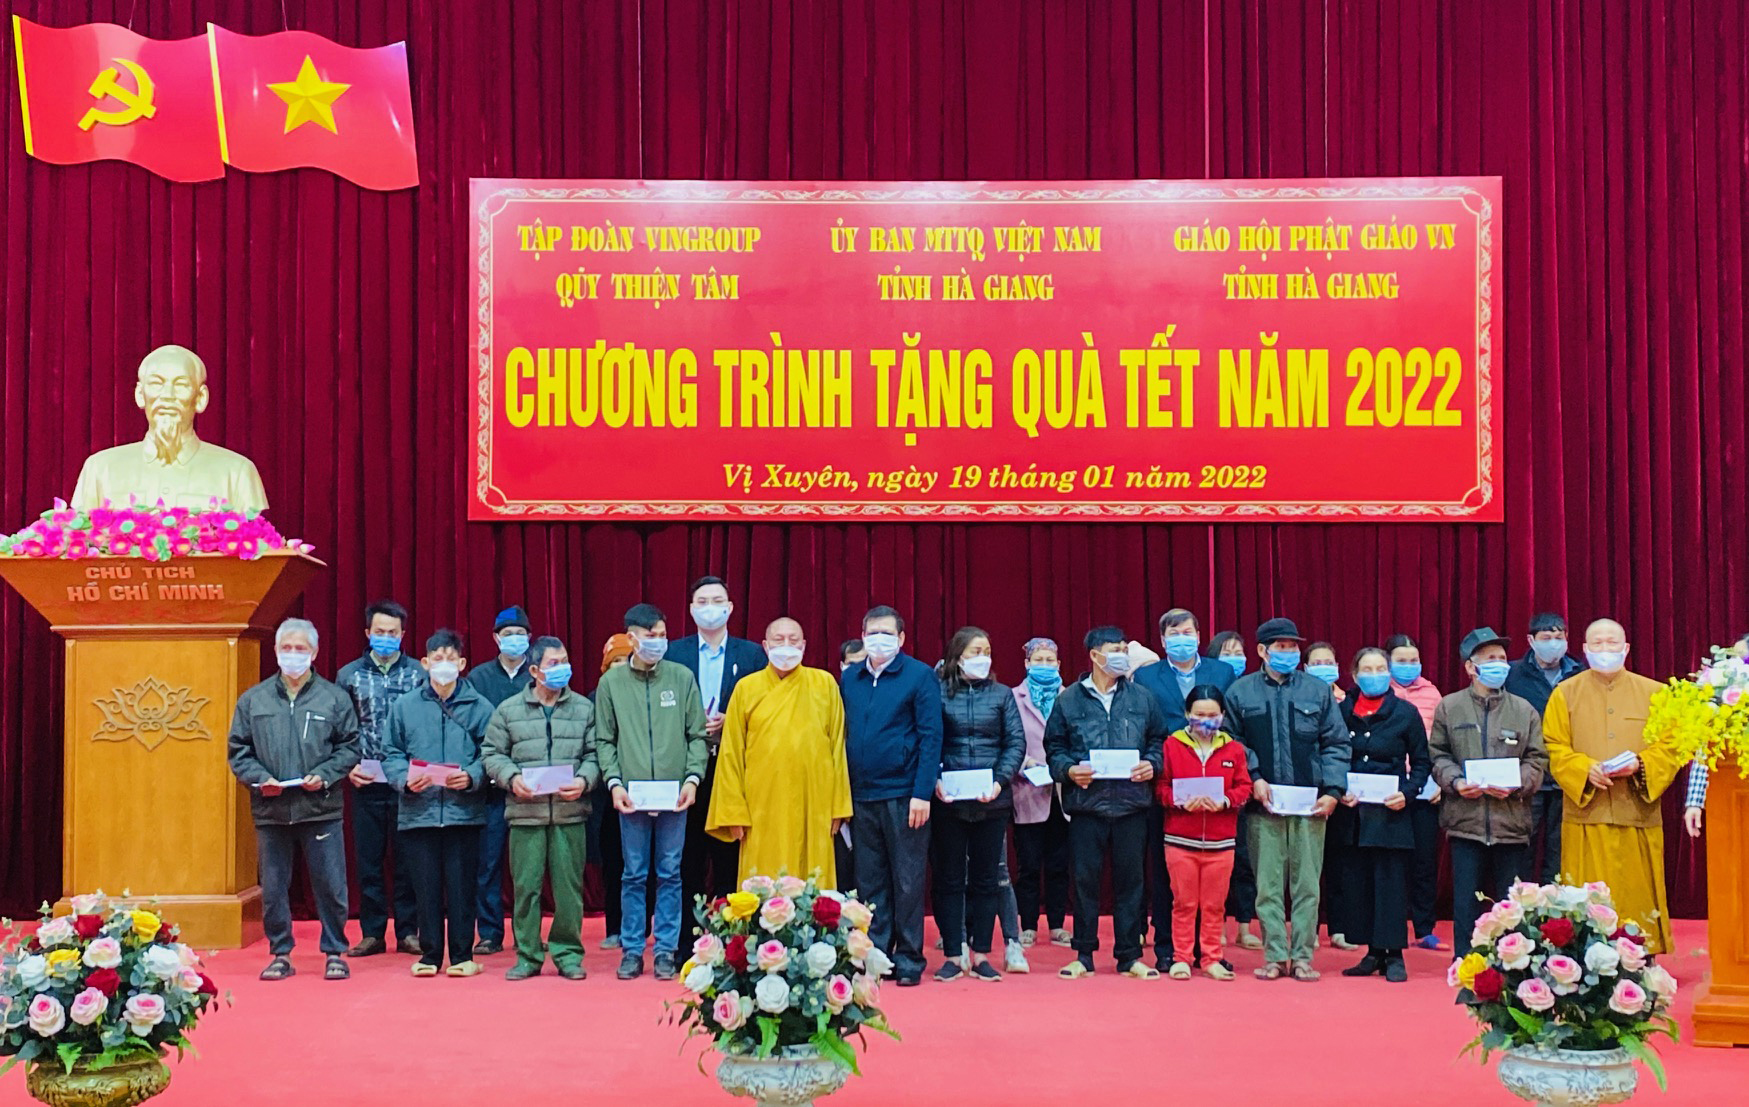 Quỹ Thiện Tâm - Tập đoàn Vingrup và Giáo hội Phật giáo Việt Nam trao quà Tết cho người nghèo huyện Vị Xuyên.			 Ảnh: BIỆN LUÂN
